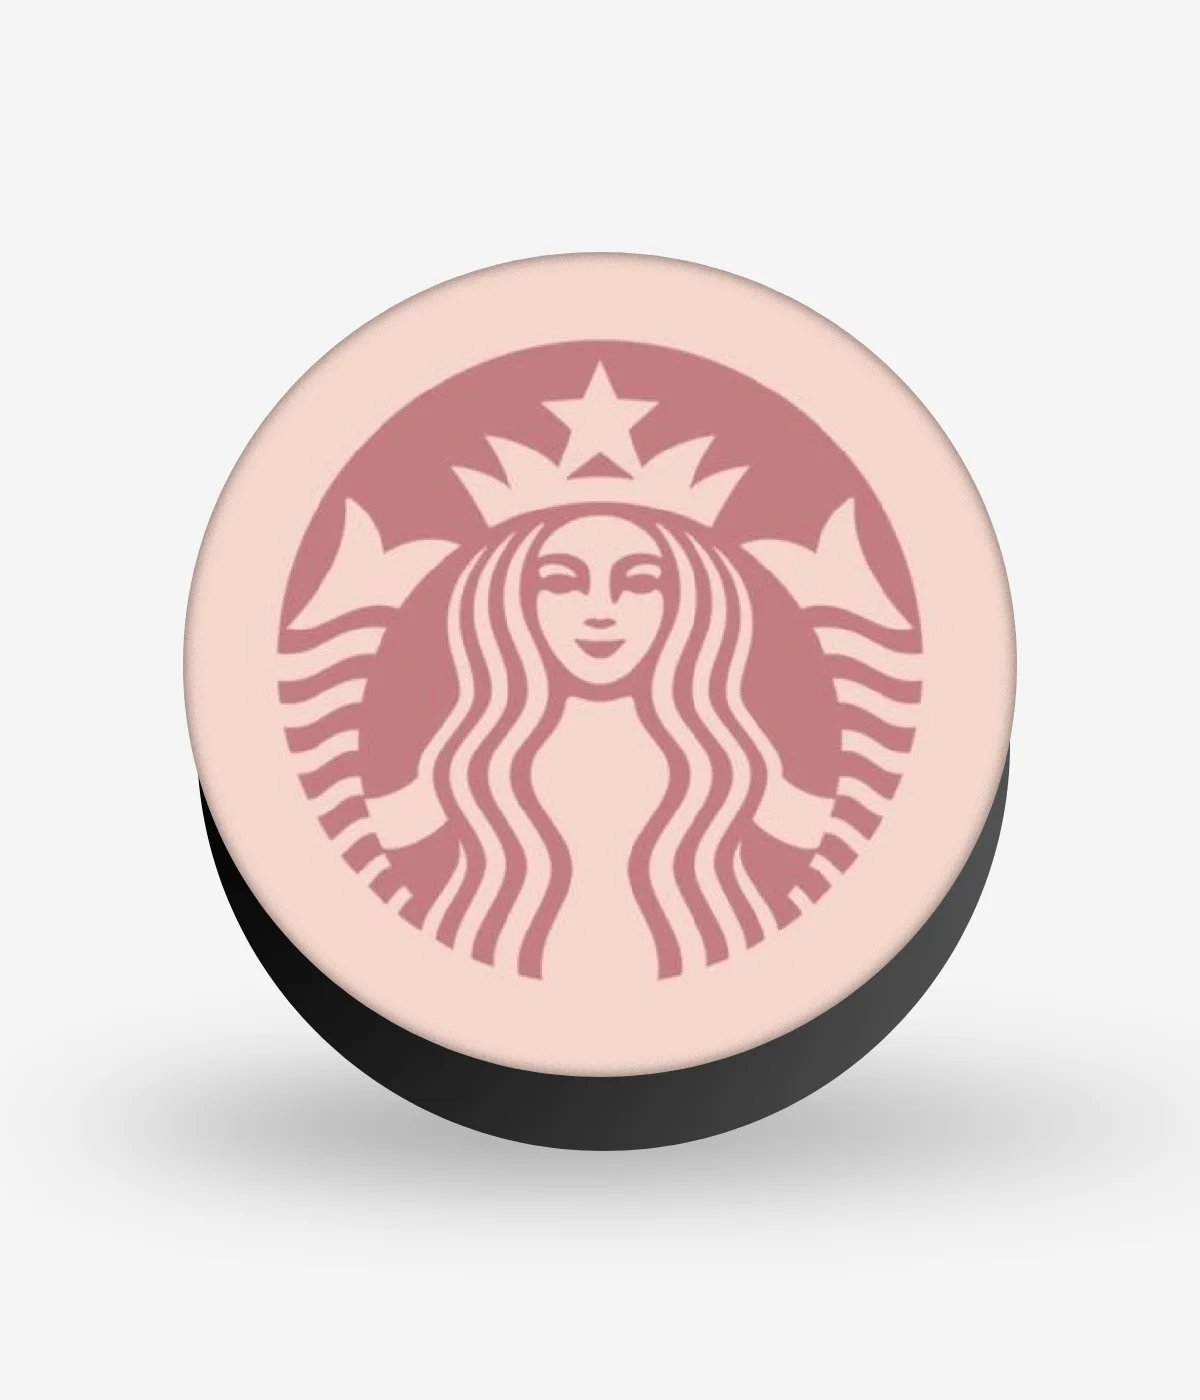 Starbucks Logo Pink Pop Socket